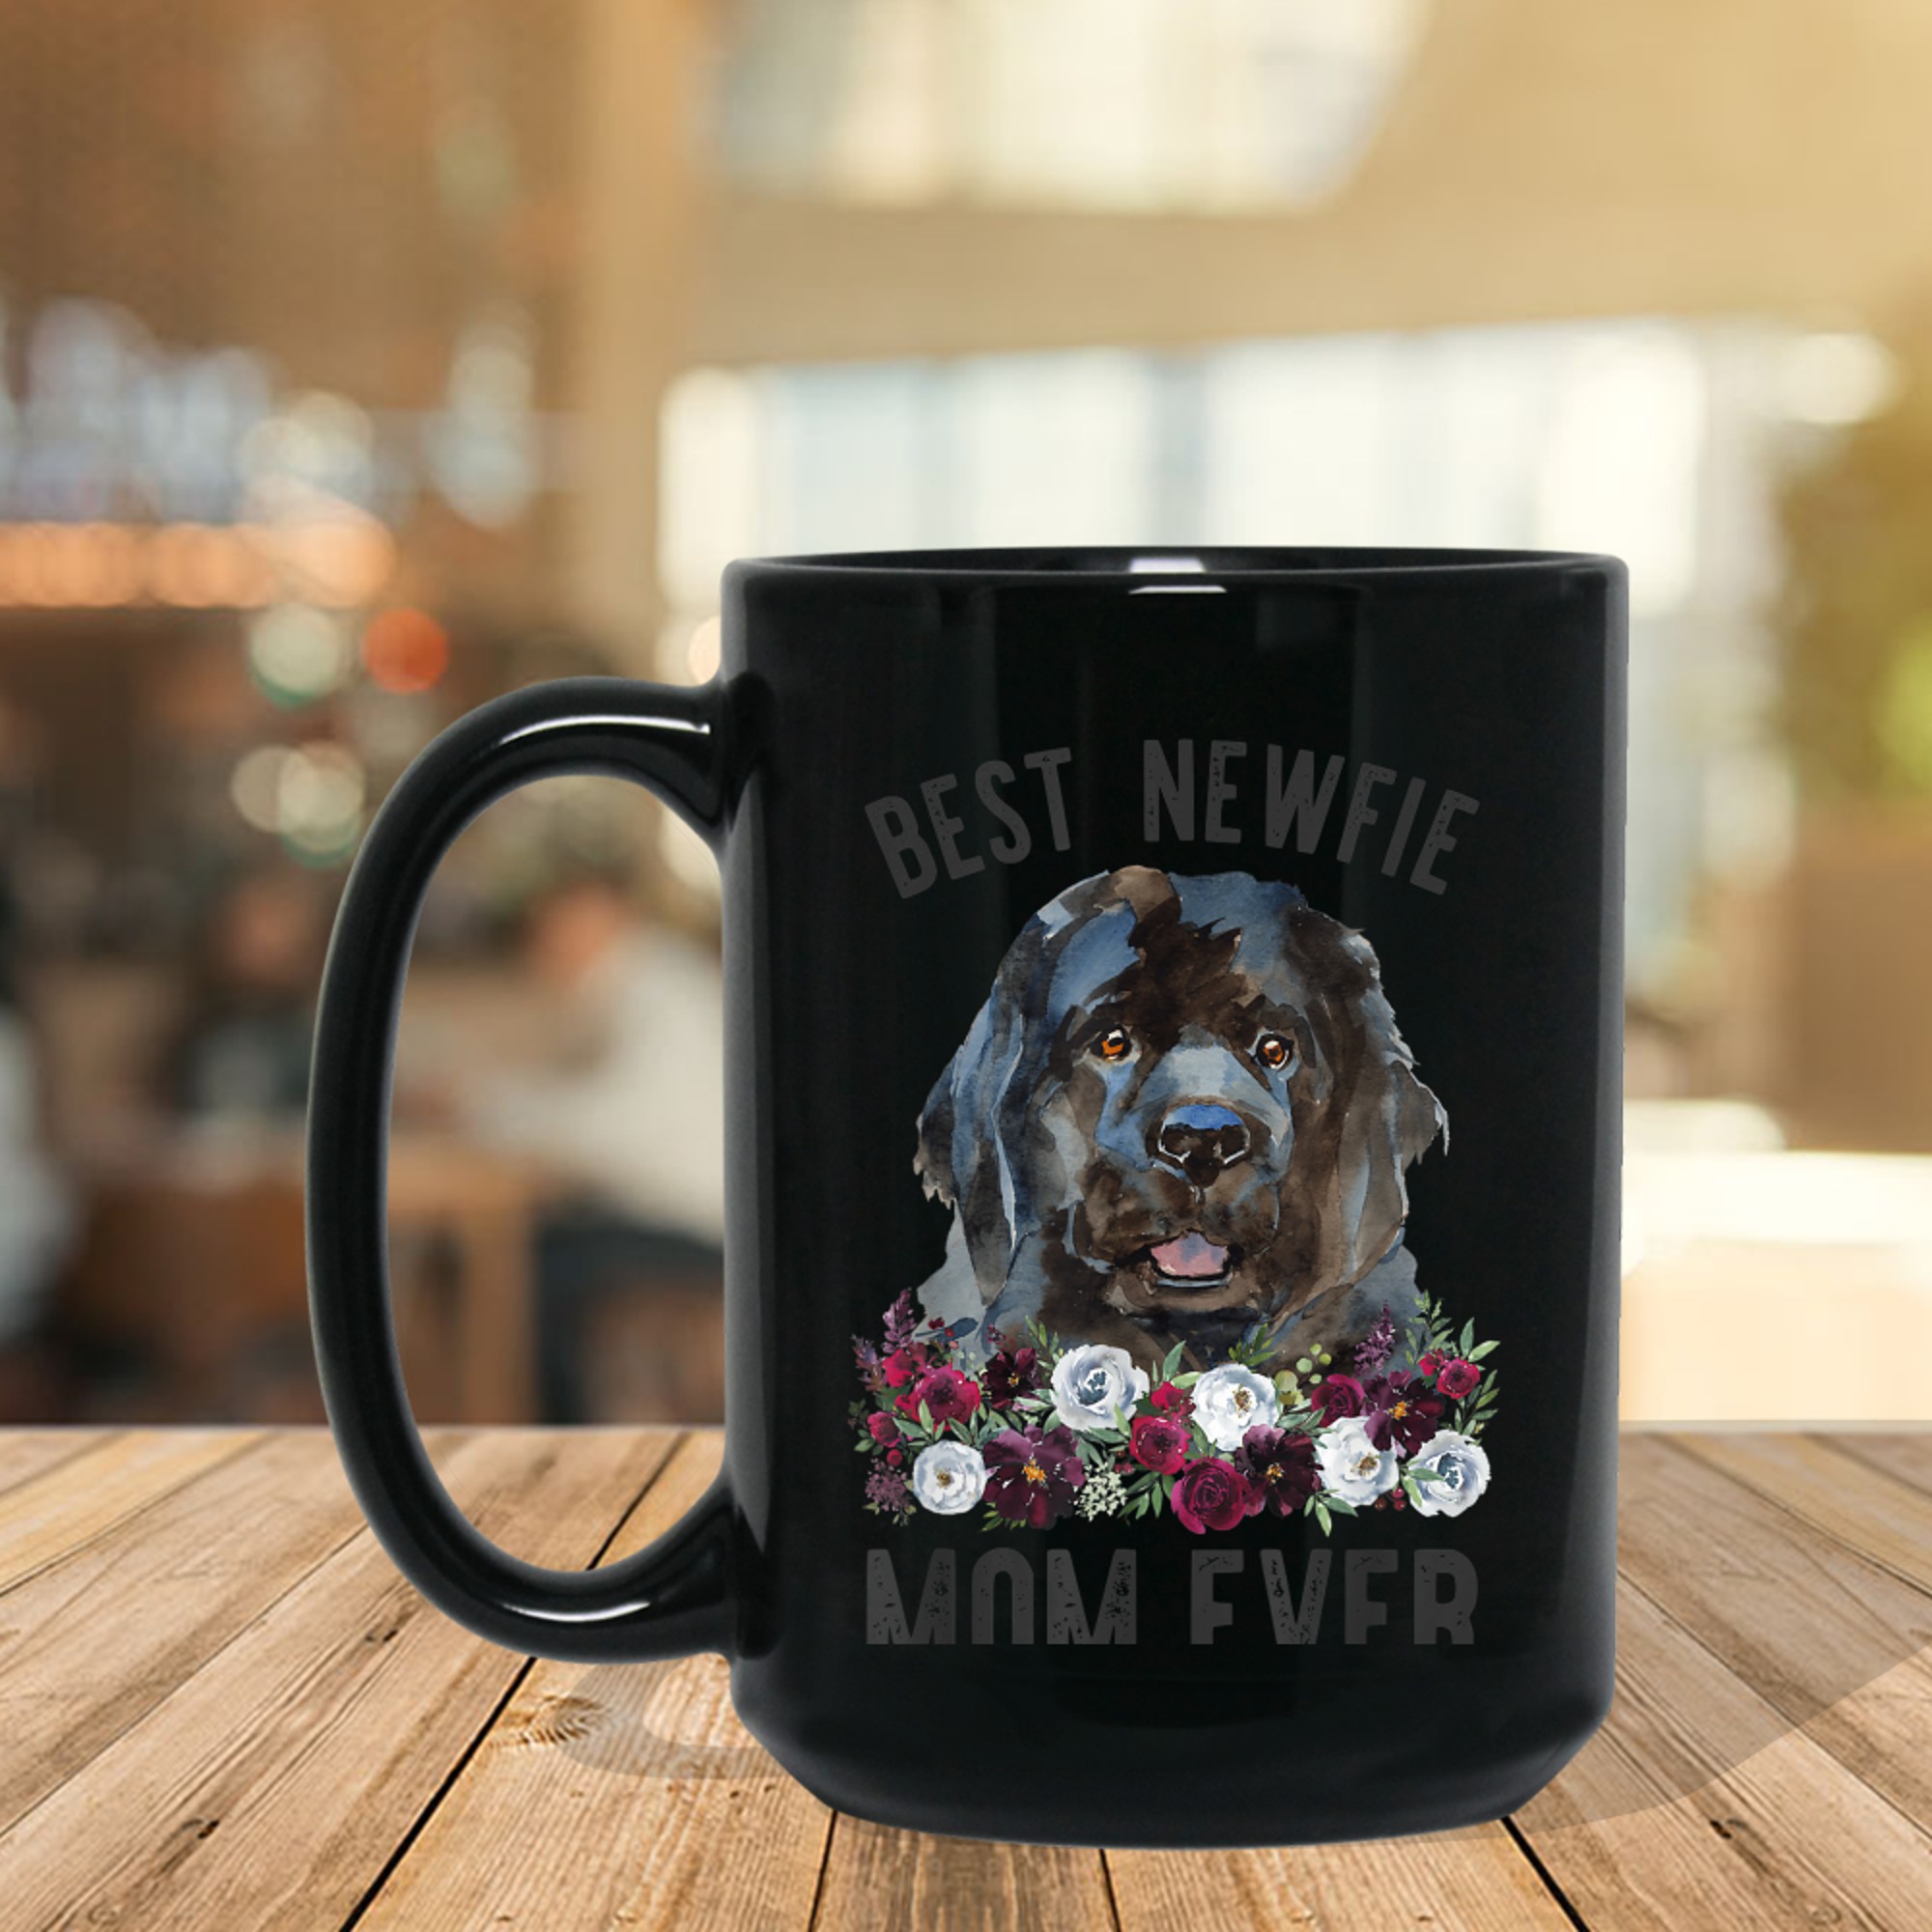 Best Newfie Mom Ever Floral Newfoundland Dog mug black